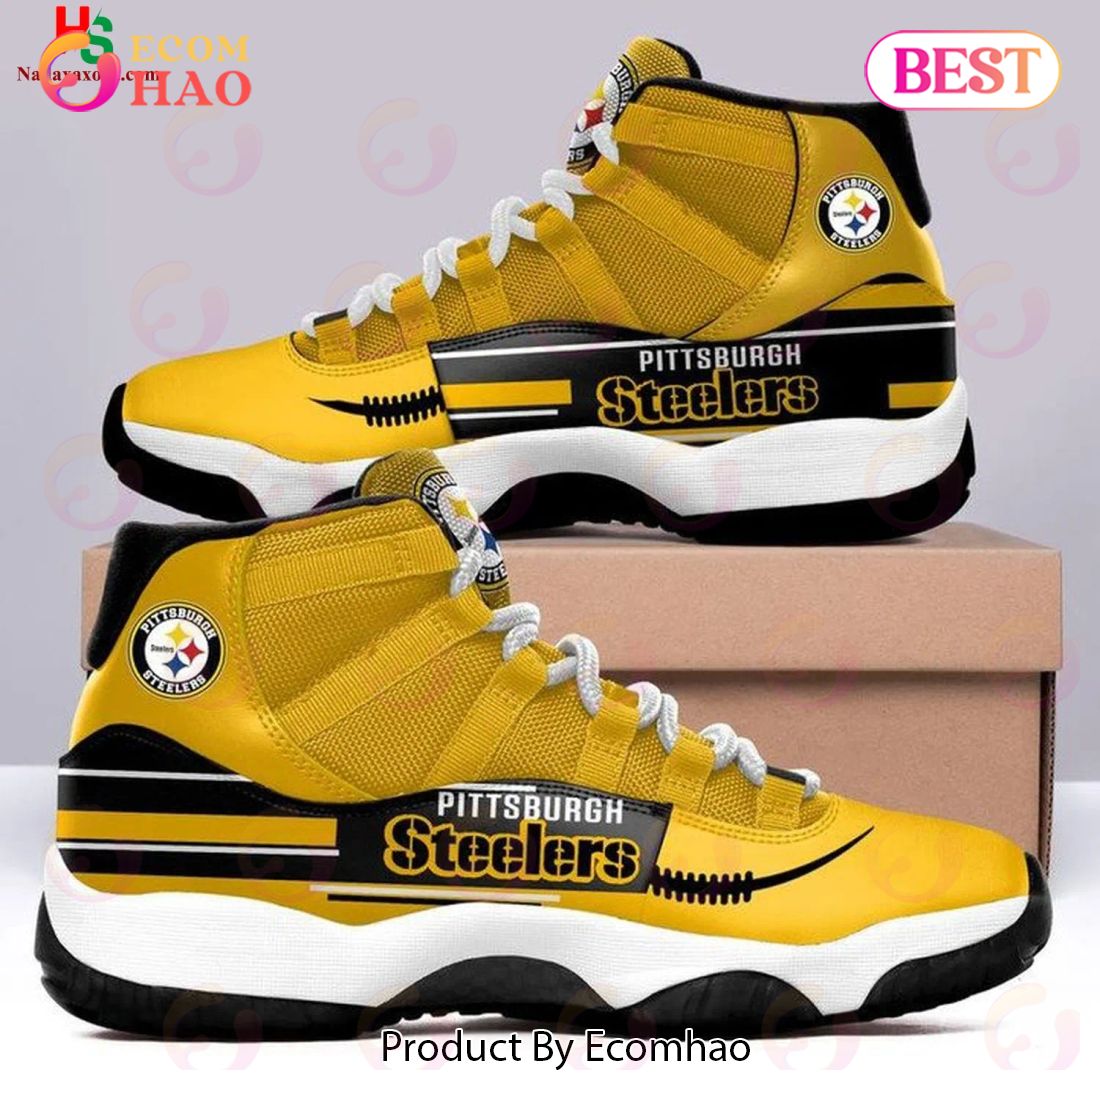 Pittsburgh Steelers NFL Team Air Jordan 11 Shoes